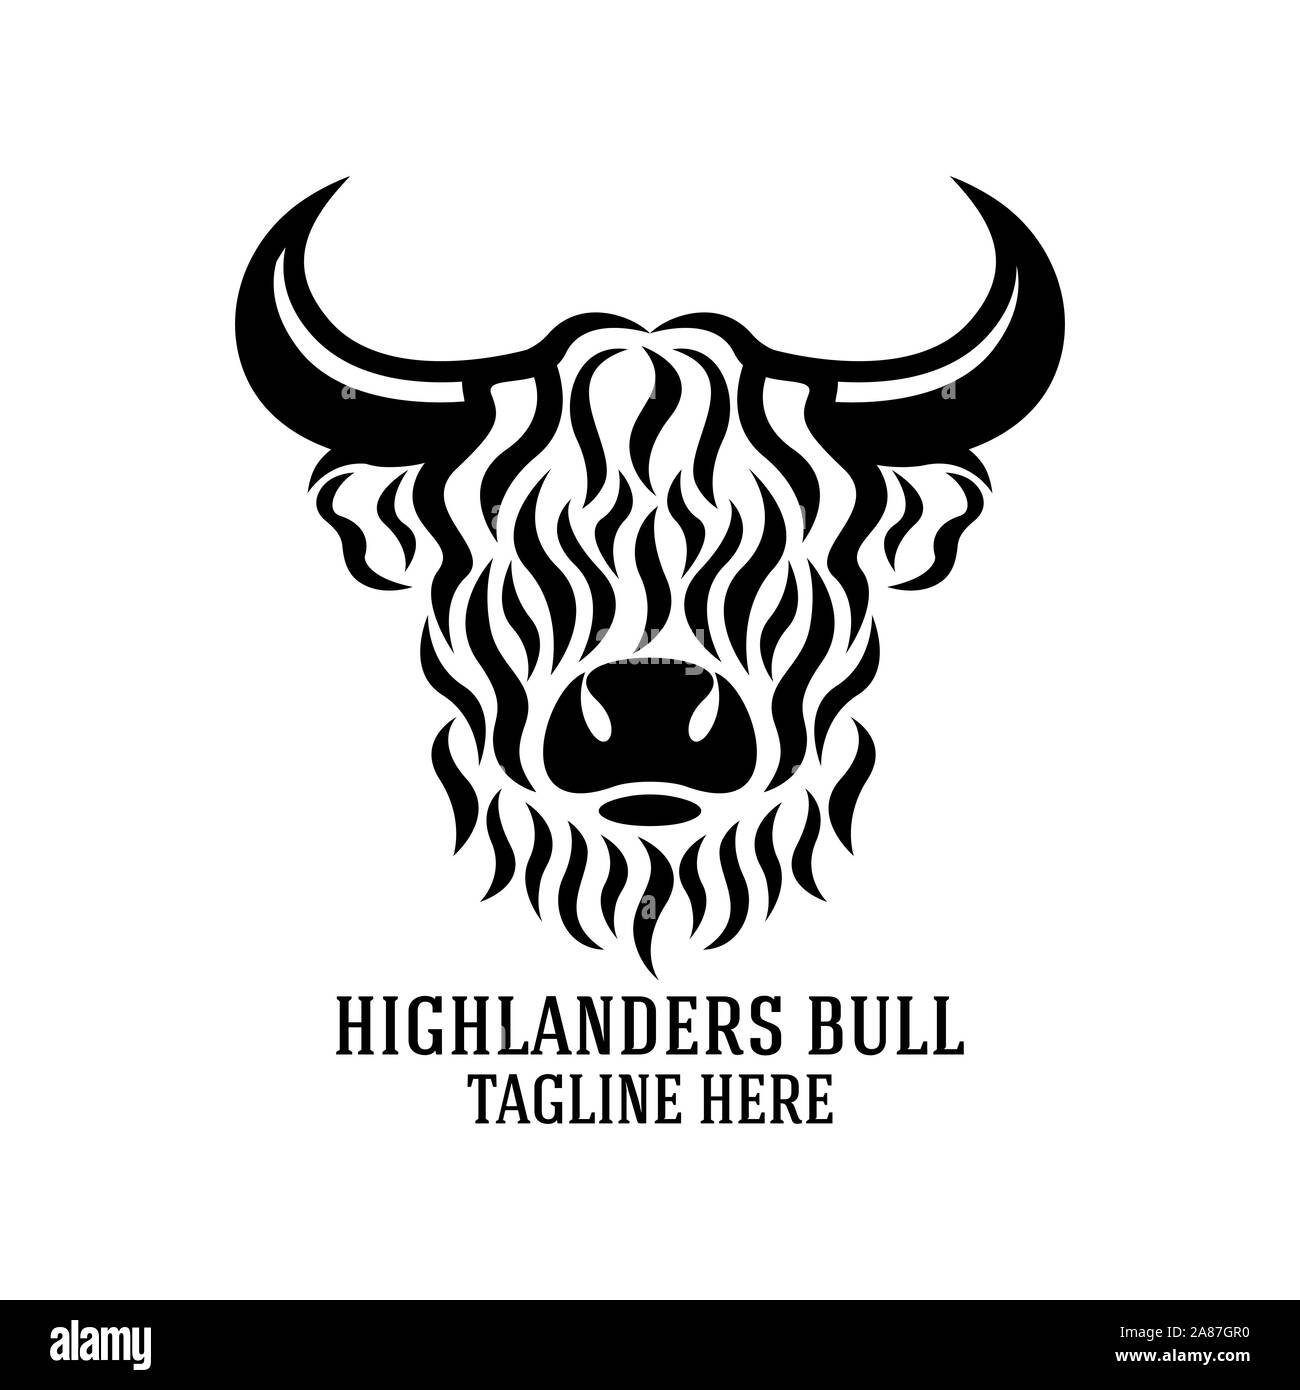 Modern highlanders bull logo. Vector illustration. Stock Vector